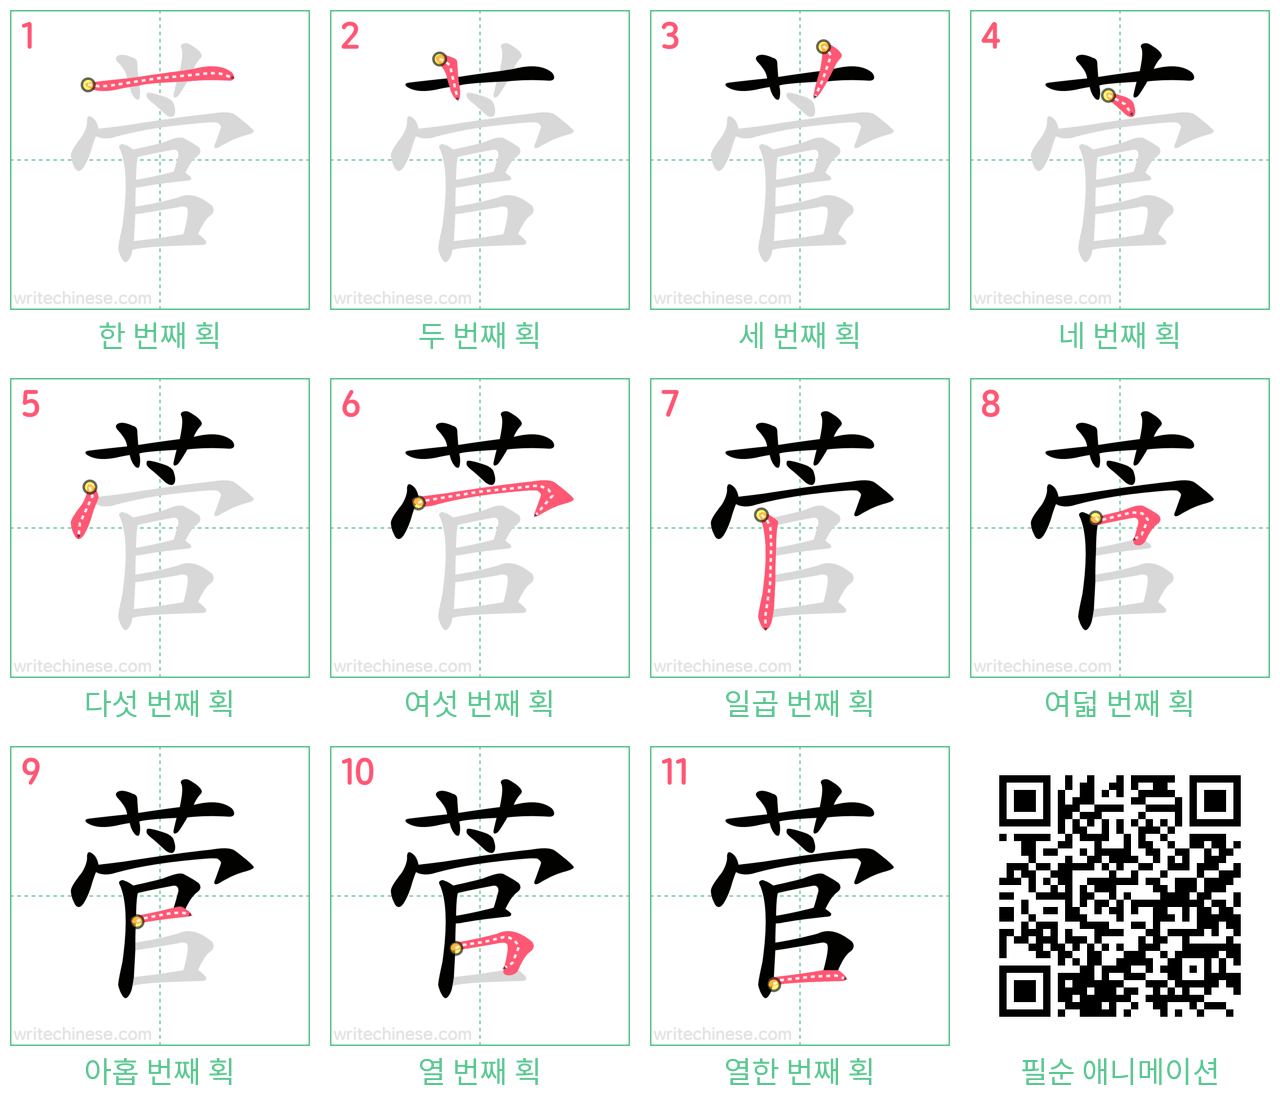 菅 step-by-step stroke order diagrams